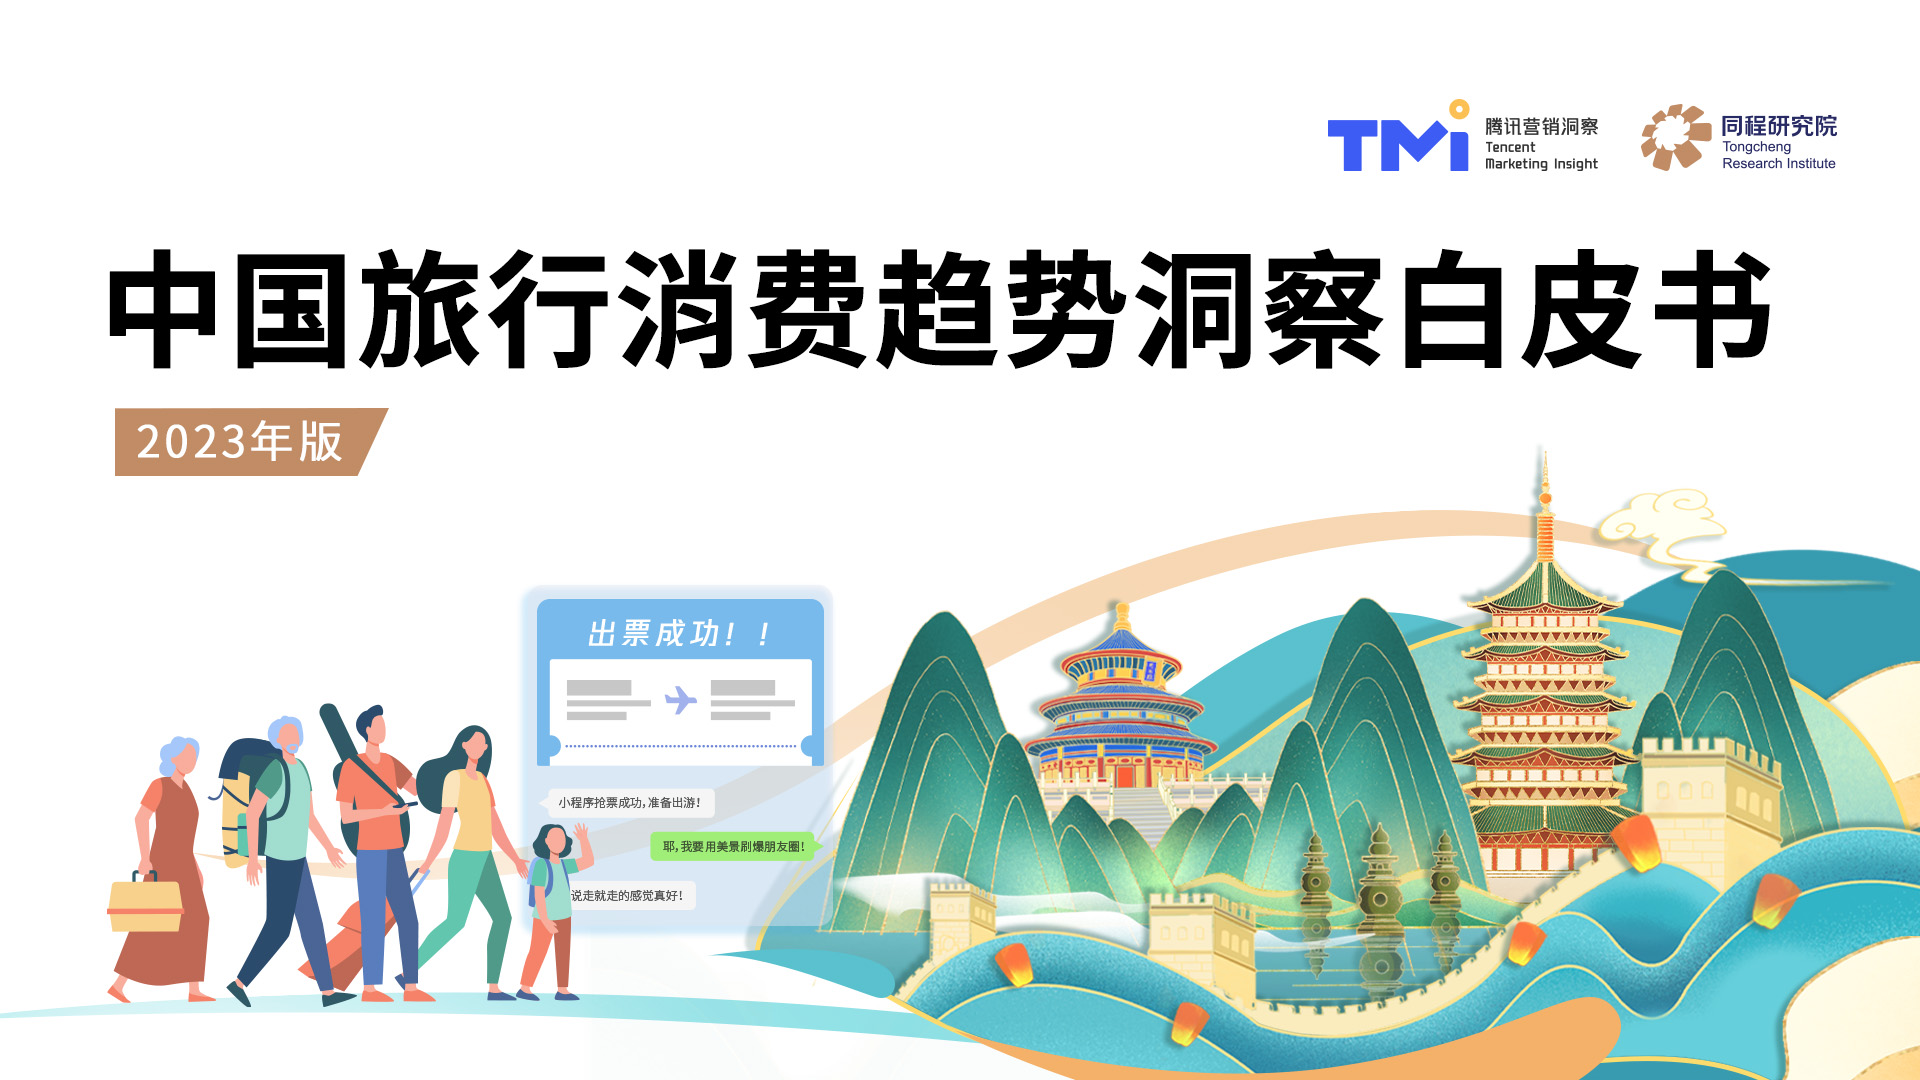 同程研究院与TMI联合发布《中国旅行消费趋势洞察白皮书（2023年版）》